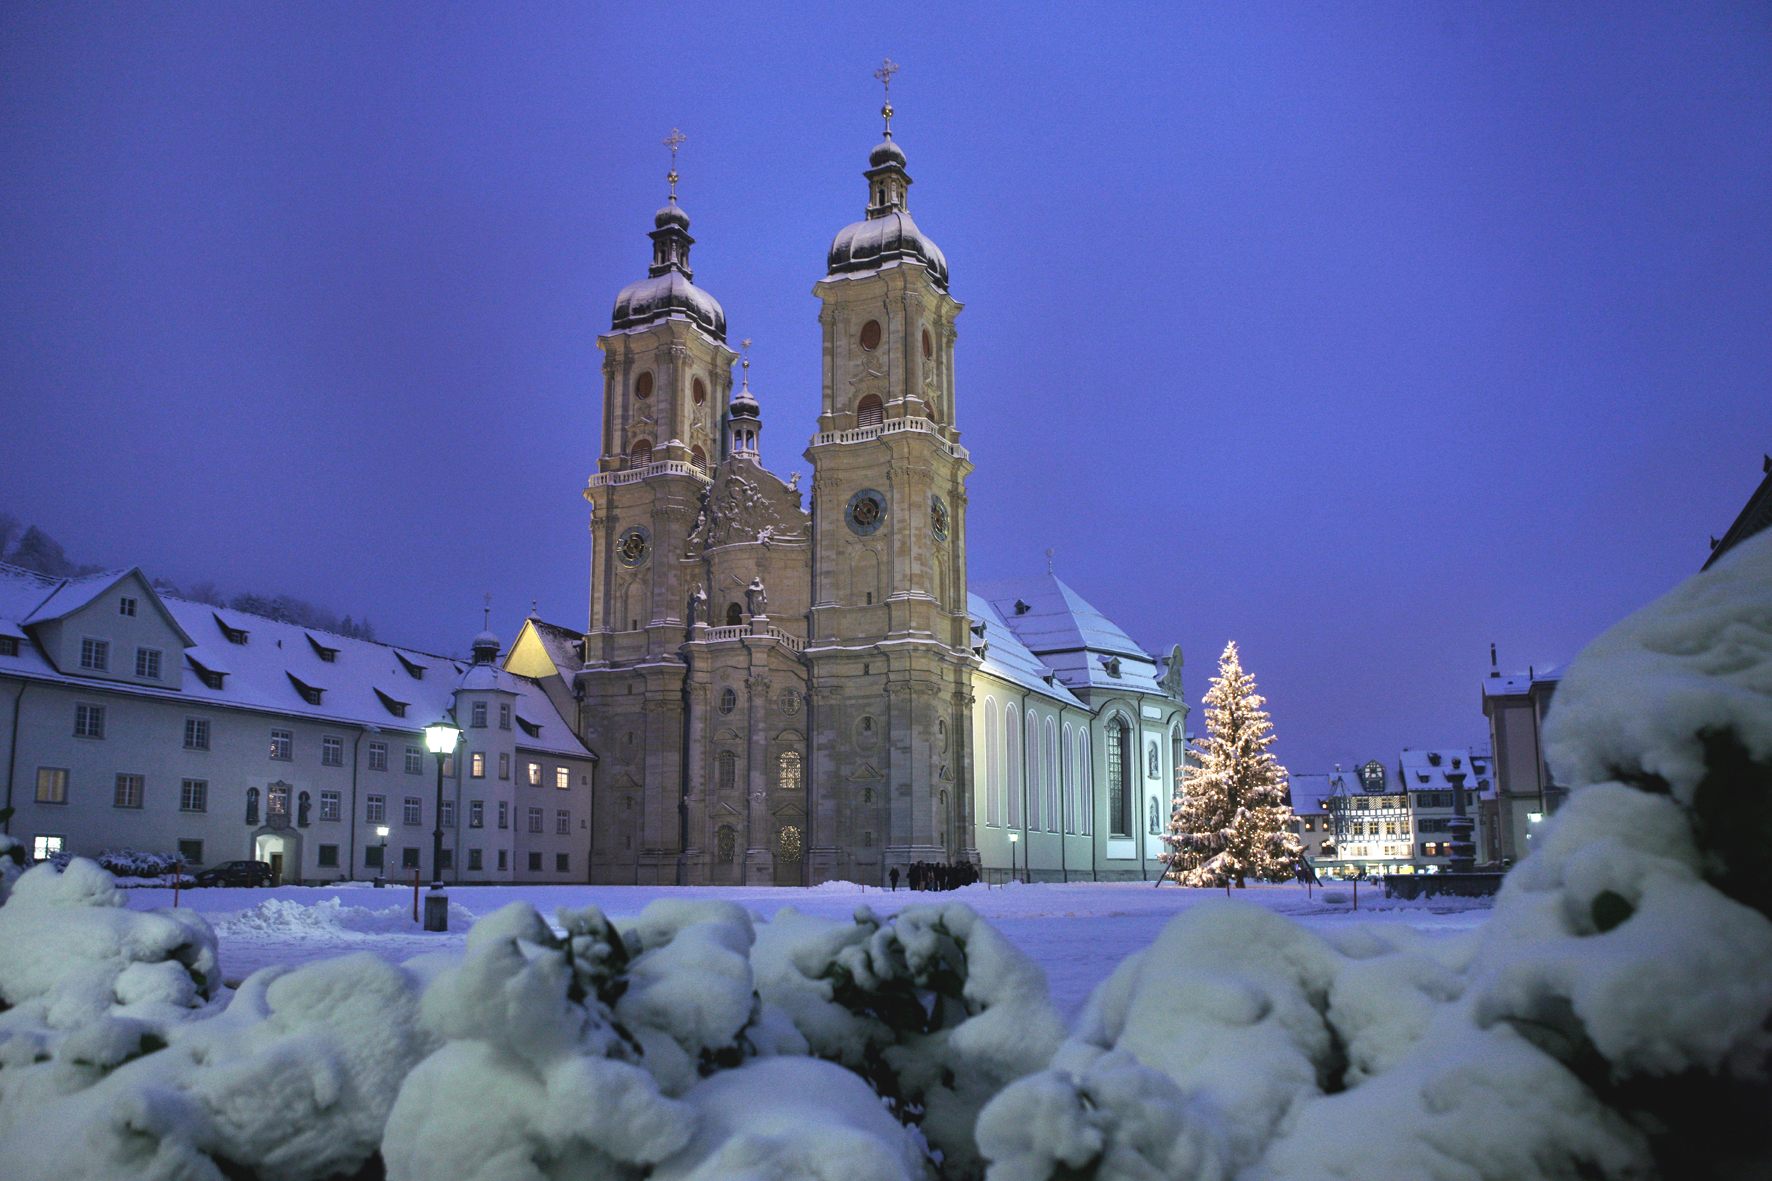 Der große Weihnachtsbaum im St.Galler Stiftsbezirk mit der Stiftskirche St. Gallen.
